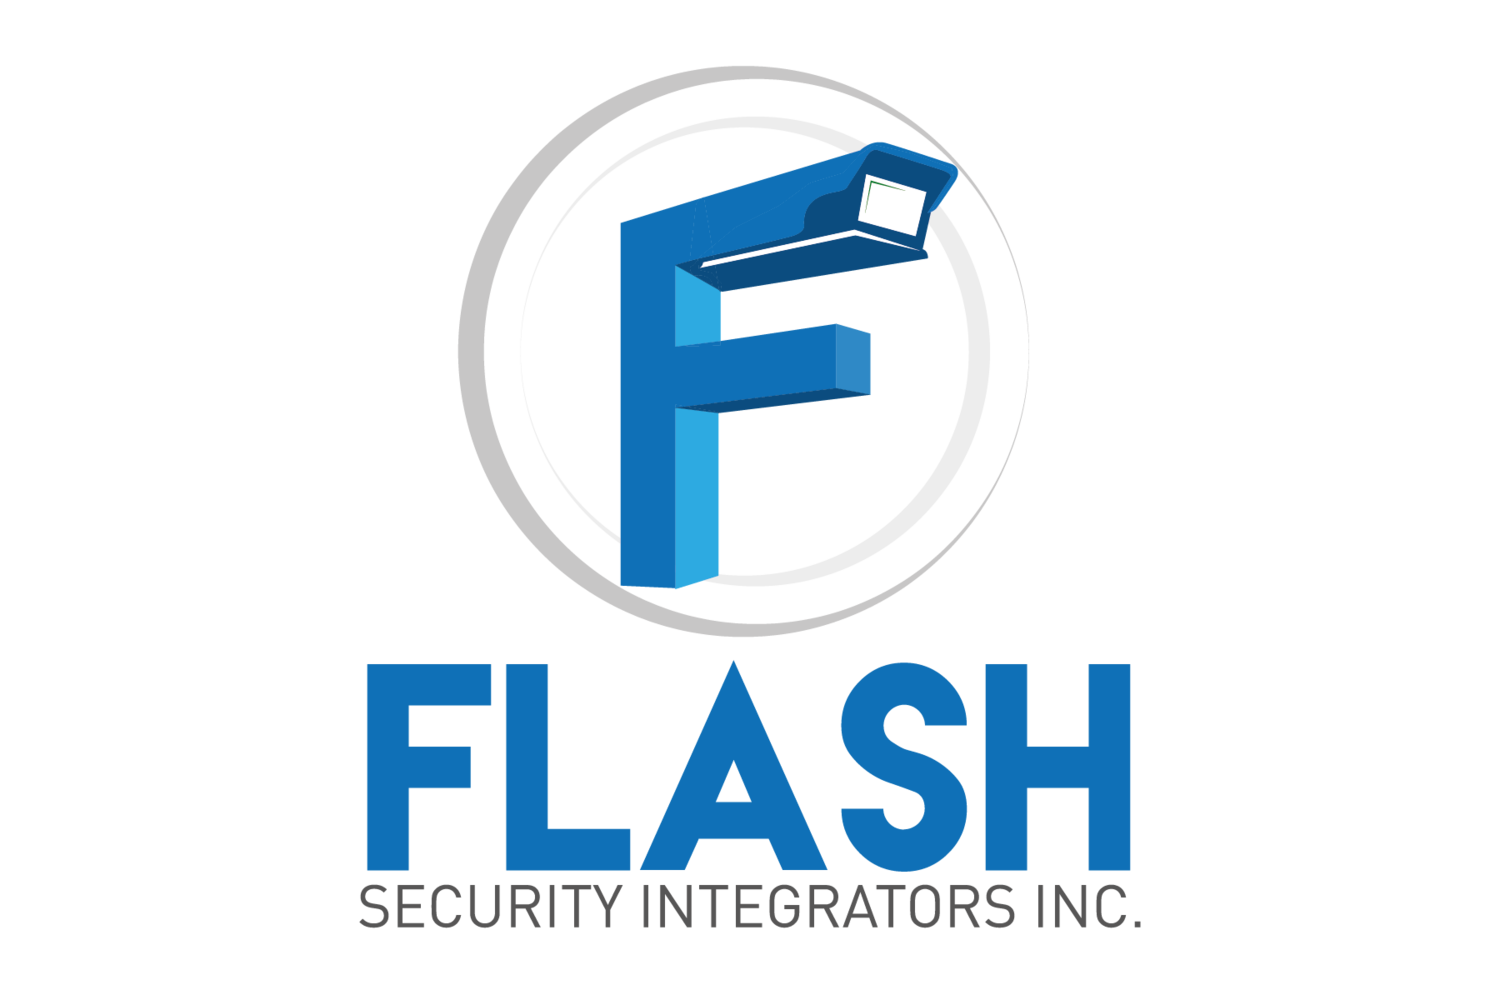 Flash Security Integrators, Inc.